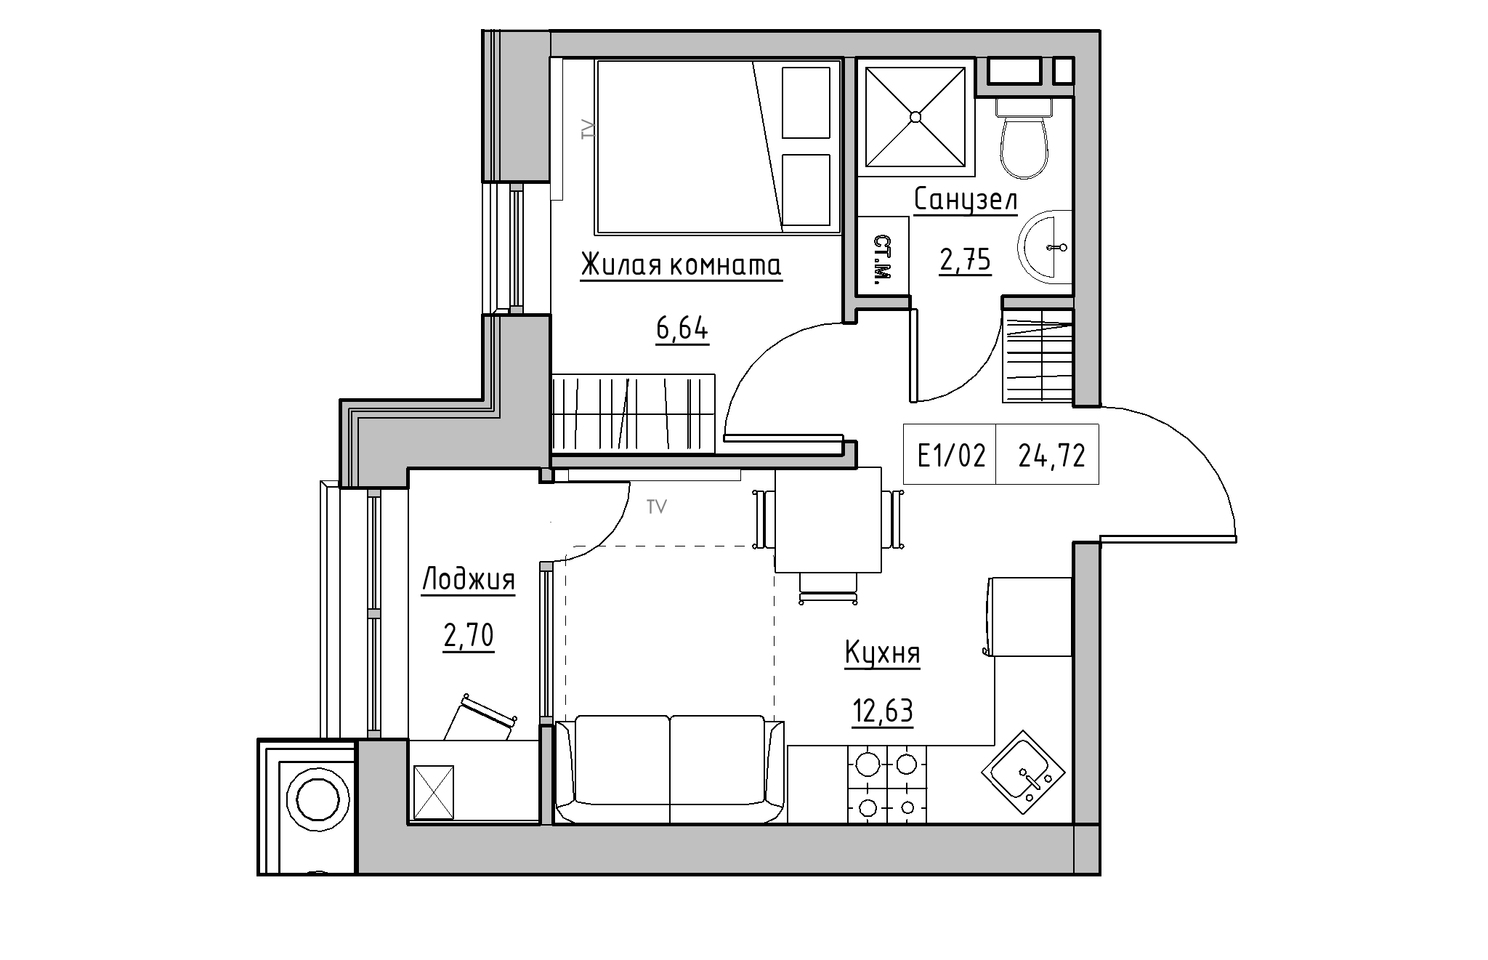 Планировка 1-к квартира площей 24.72м2, KS-010-03/0013.